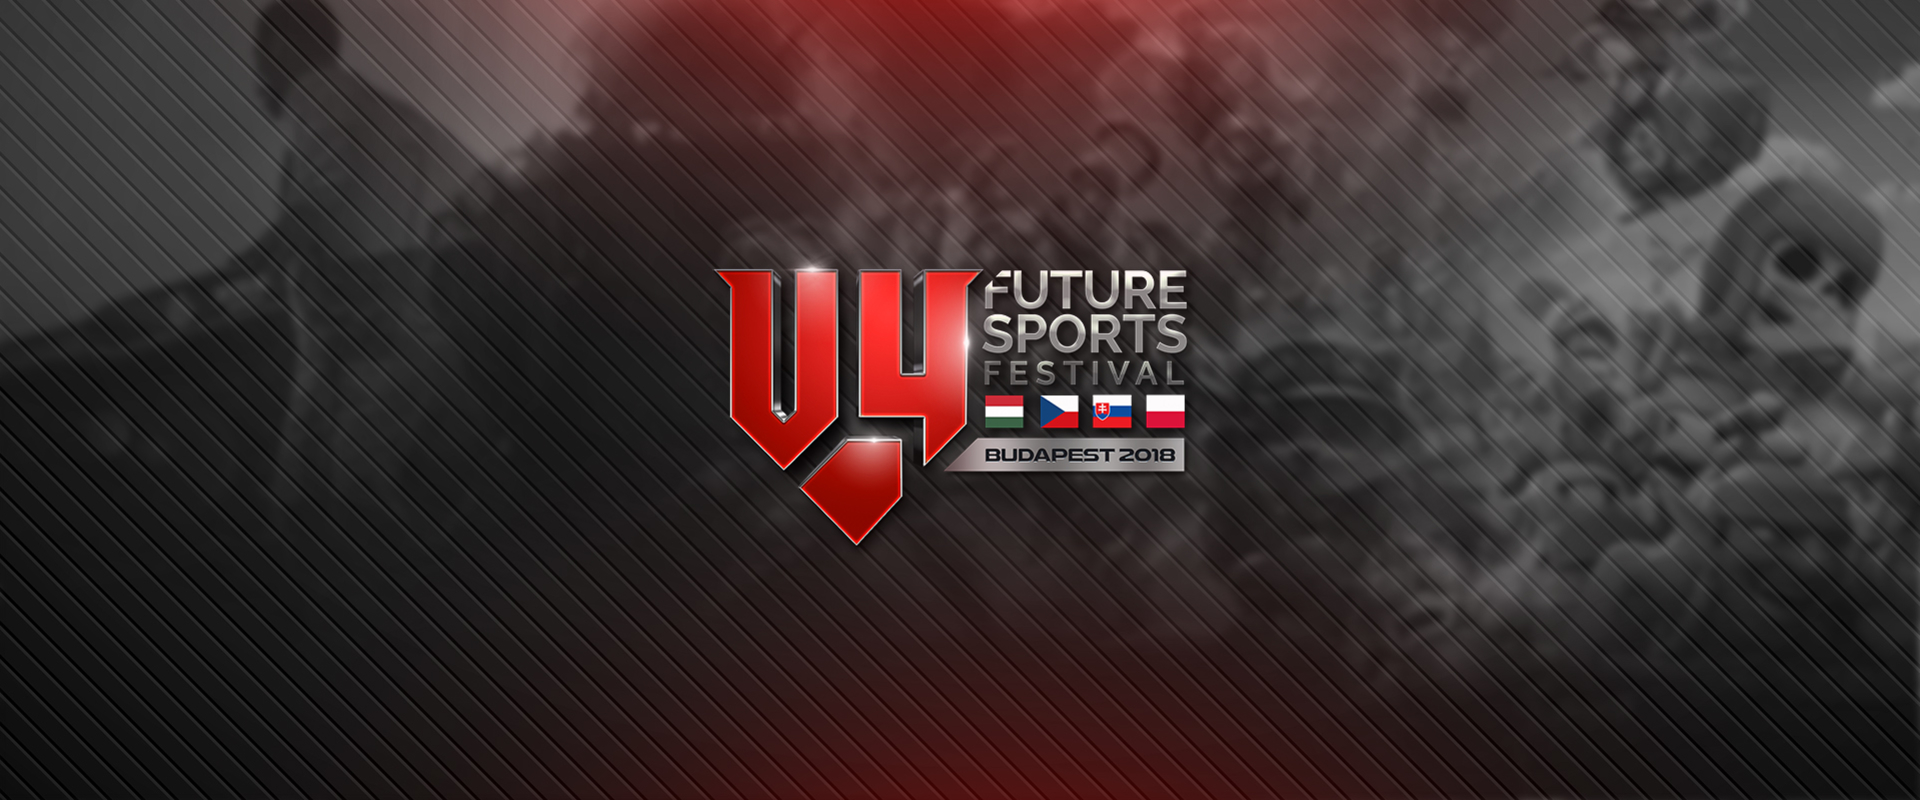 4 játékban nevezhetnek a magyarok az 1 millió euró összdíjazású V4 Future Sports Festivalra